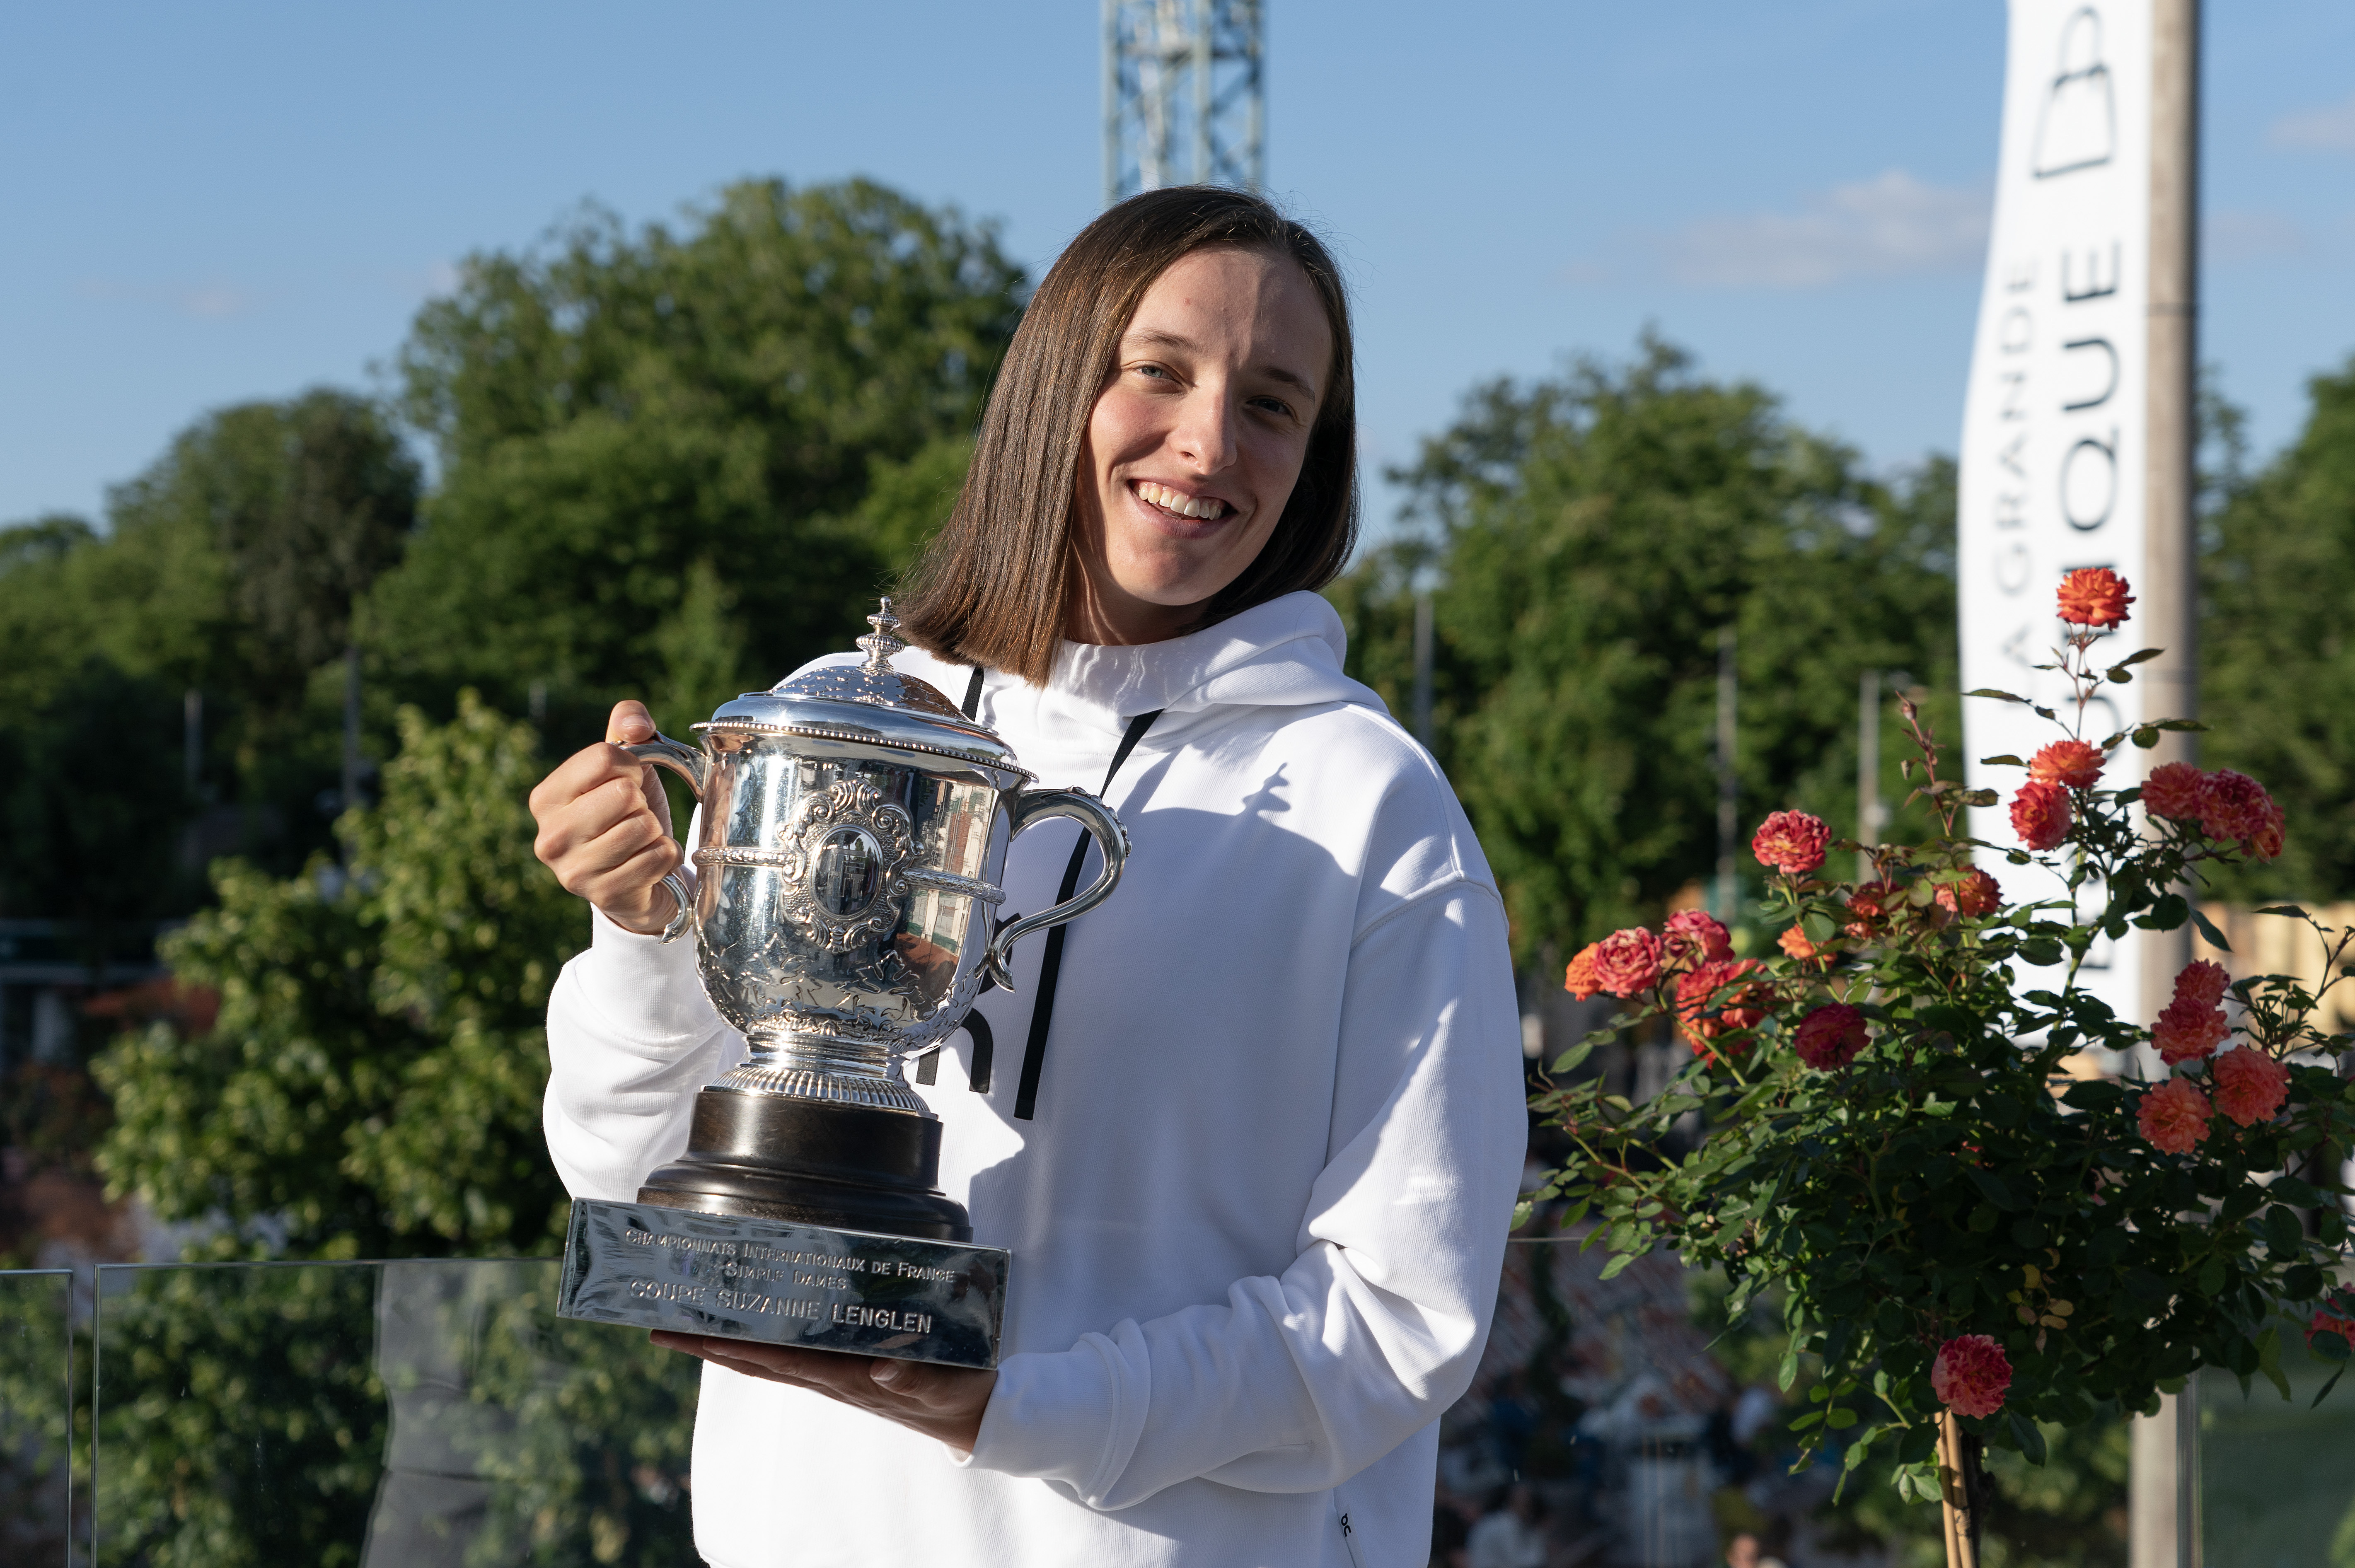 テニス＝全仏4回制覇のシフィオンテク「私は完璧主義者」